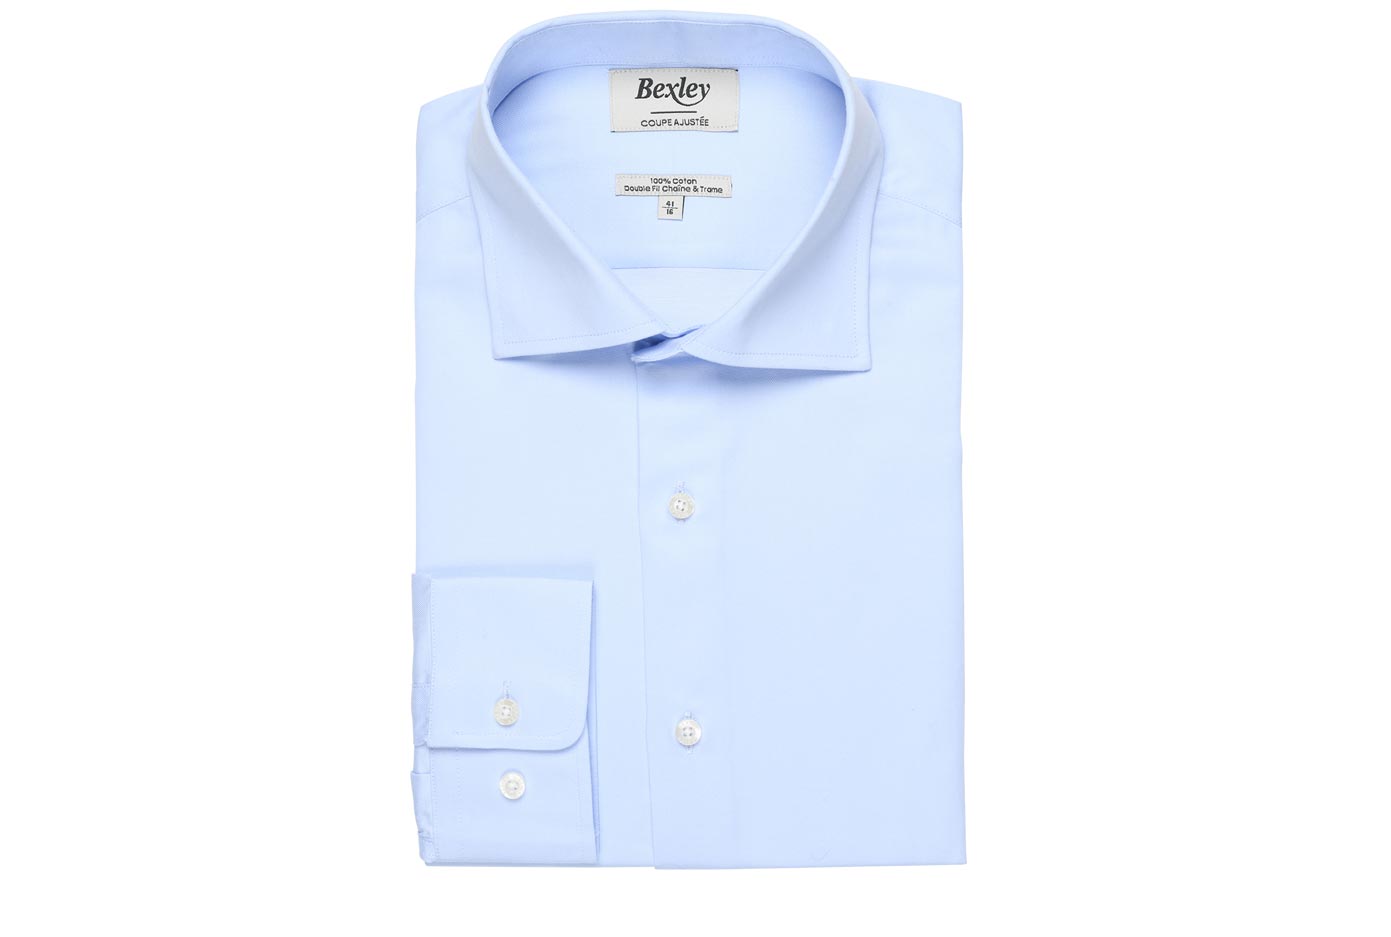 bexley chemise homme 100% coton, bleu pale, manches longues, coupe cintrée